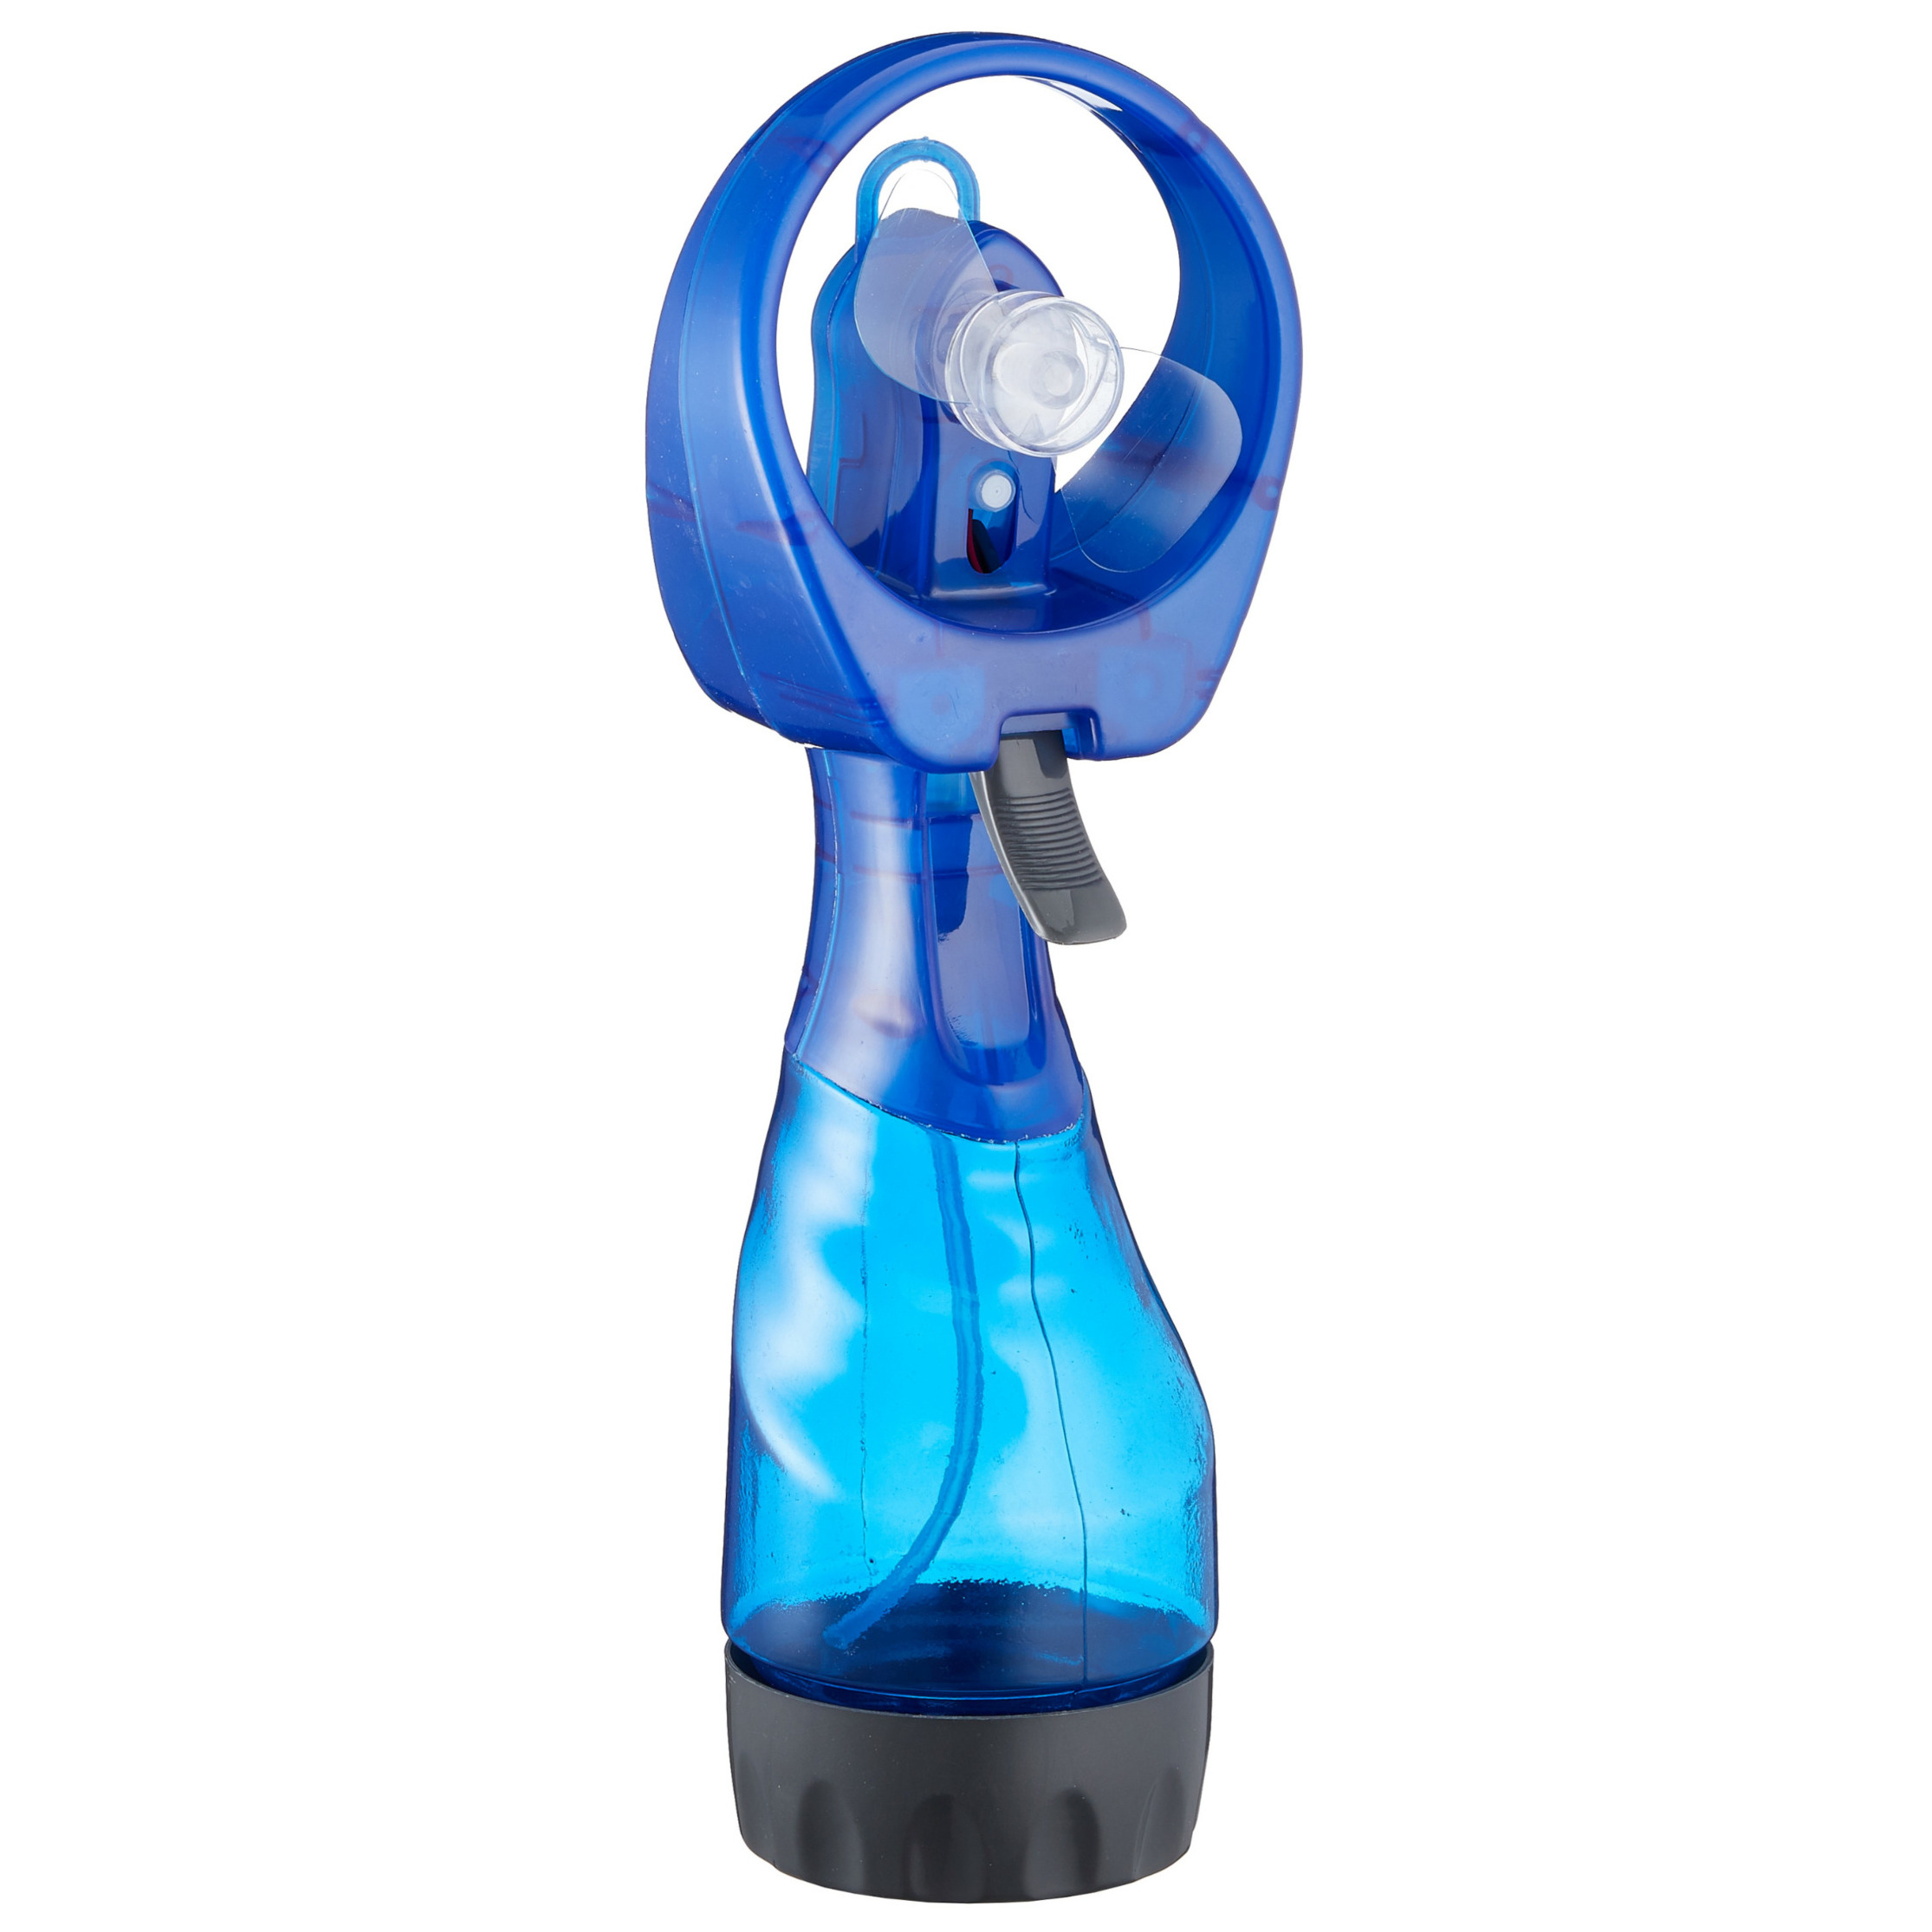 Ventilator-Waterverstuiver voor in je hand Verkoeling in zomer 25 cm Blauw